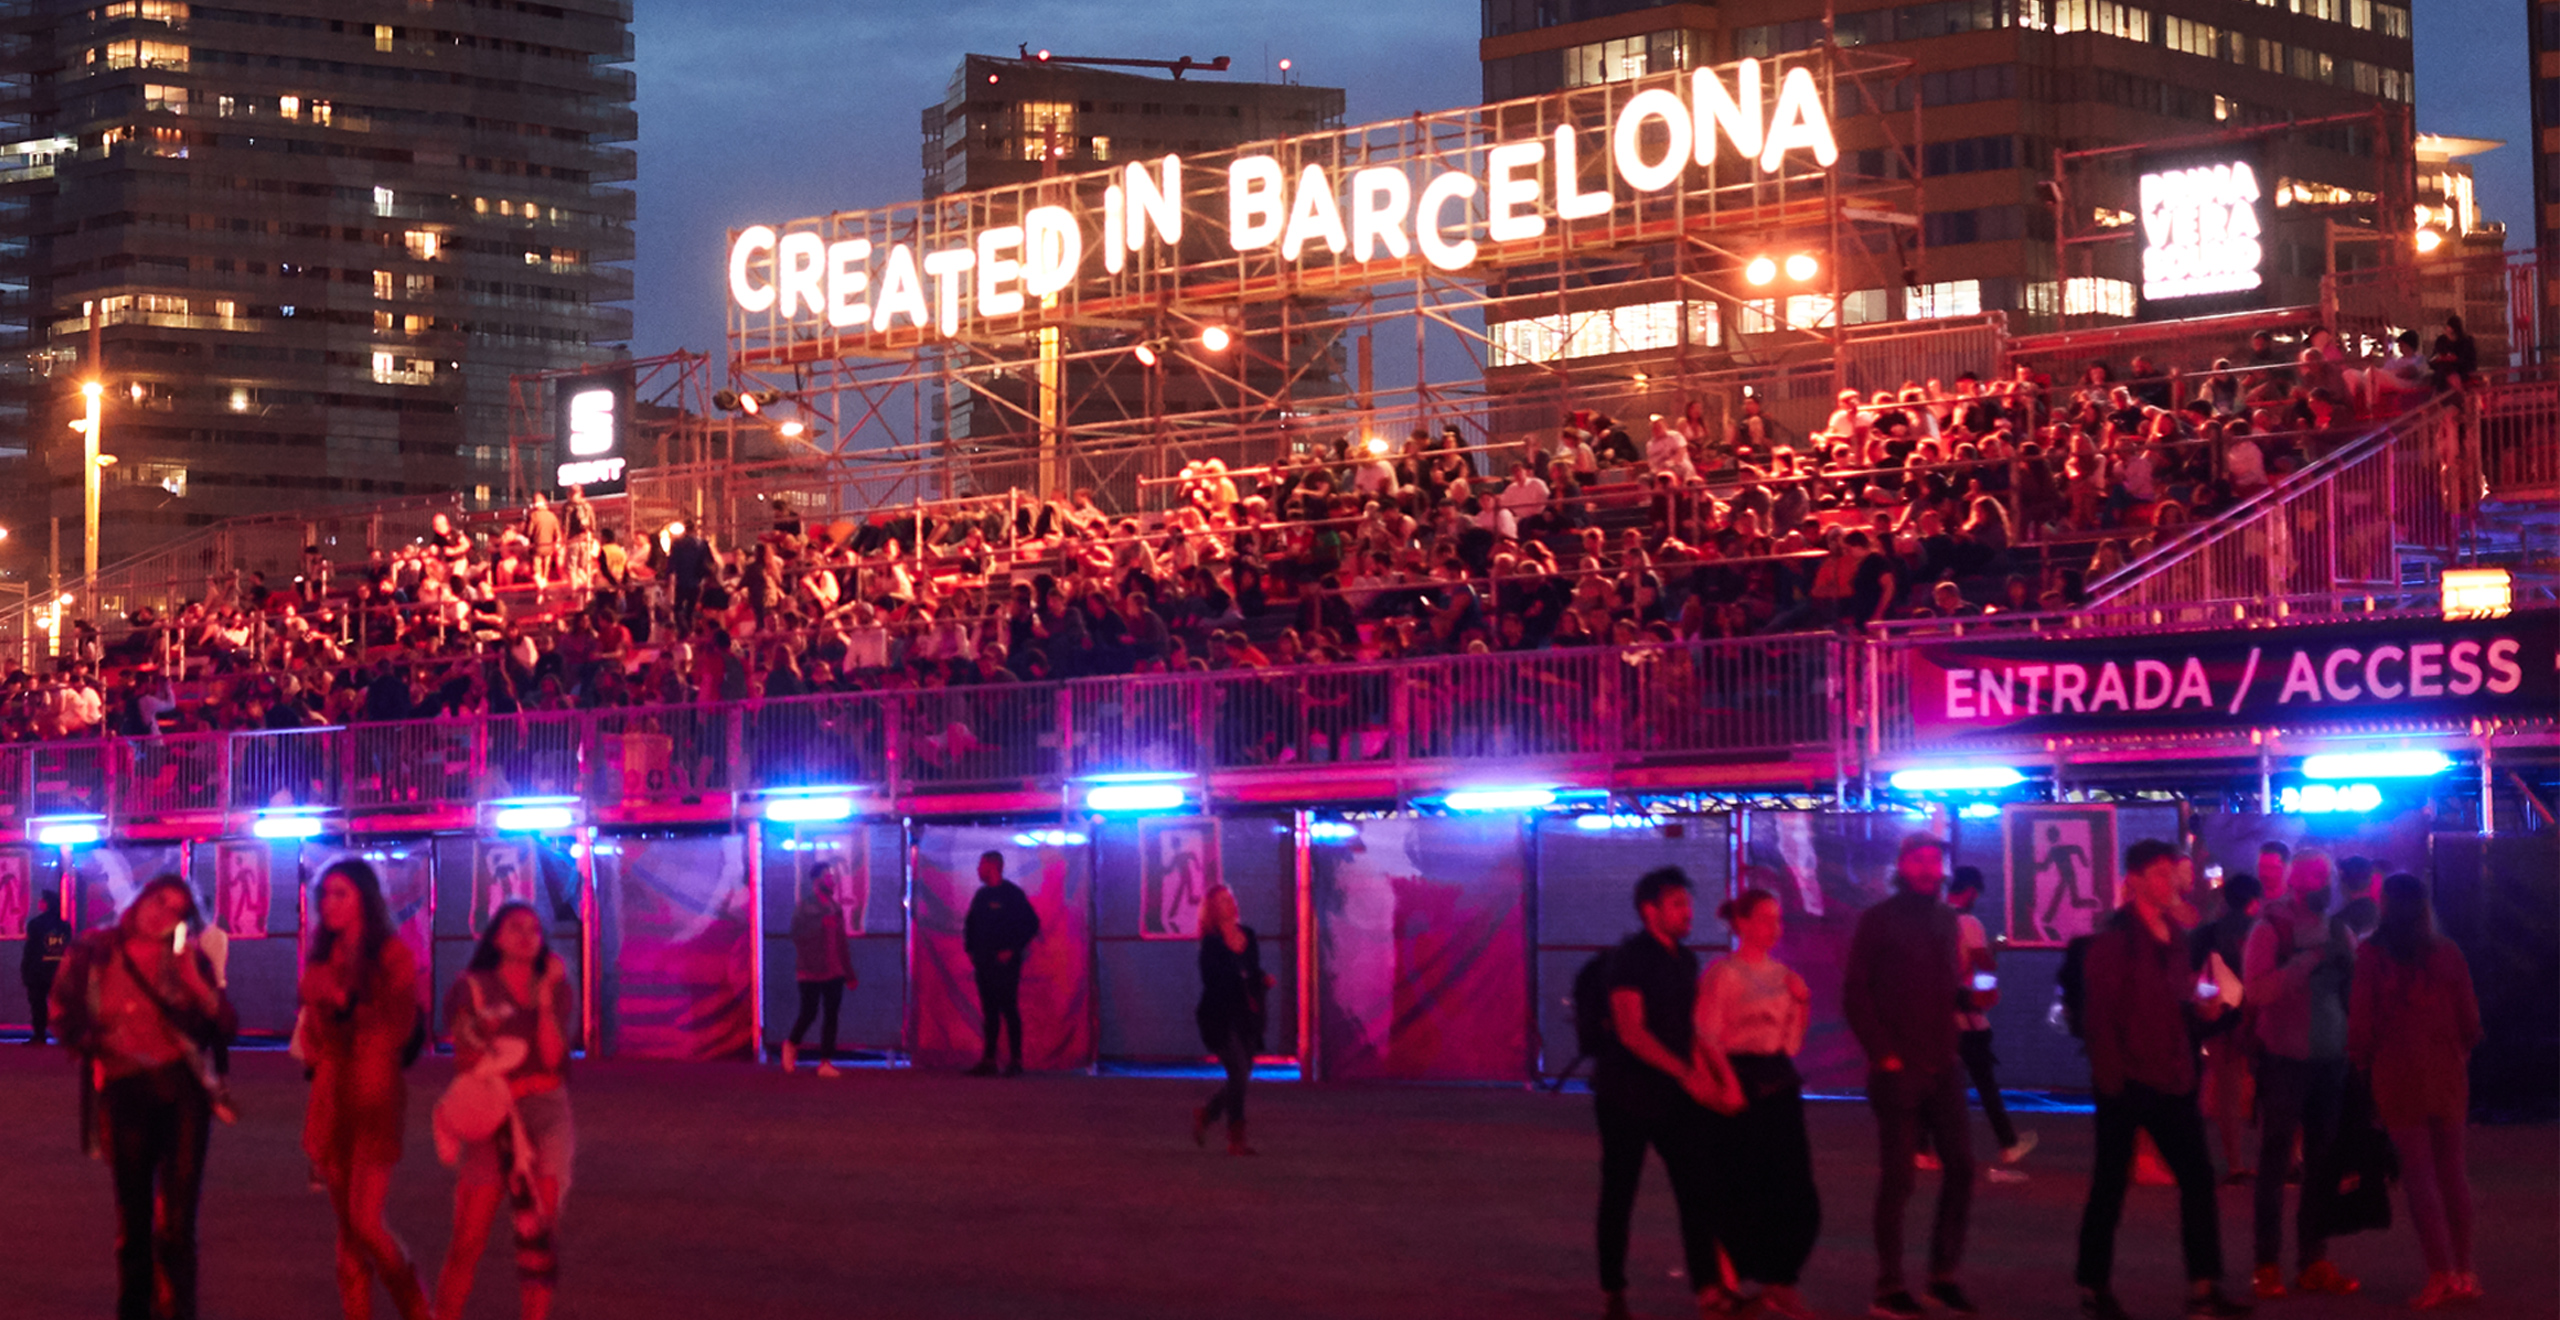 Primavera Sound sponsorisé par SEAT - Créé à Barcelone signe au festival de musique